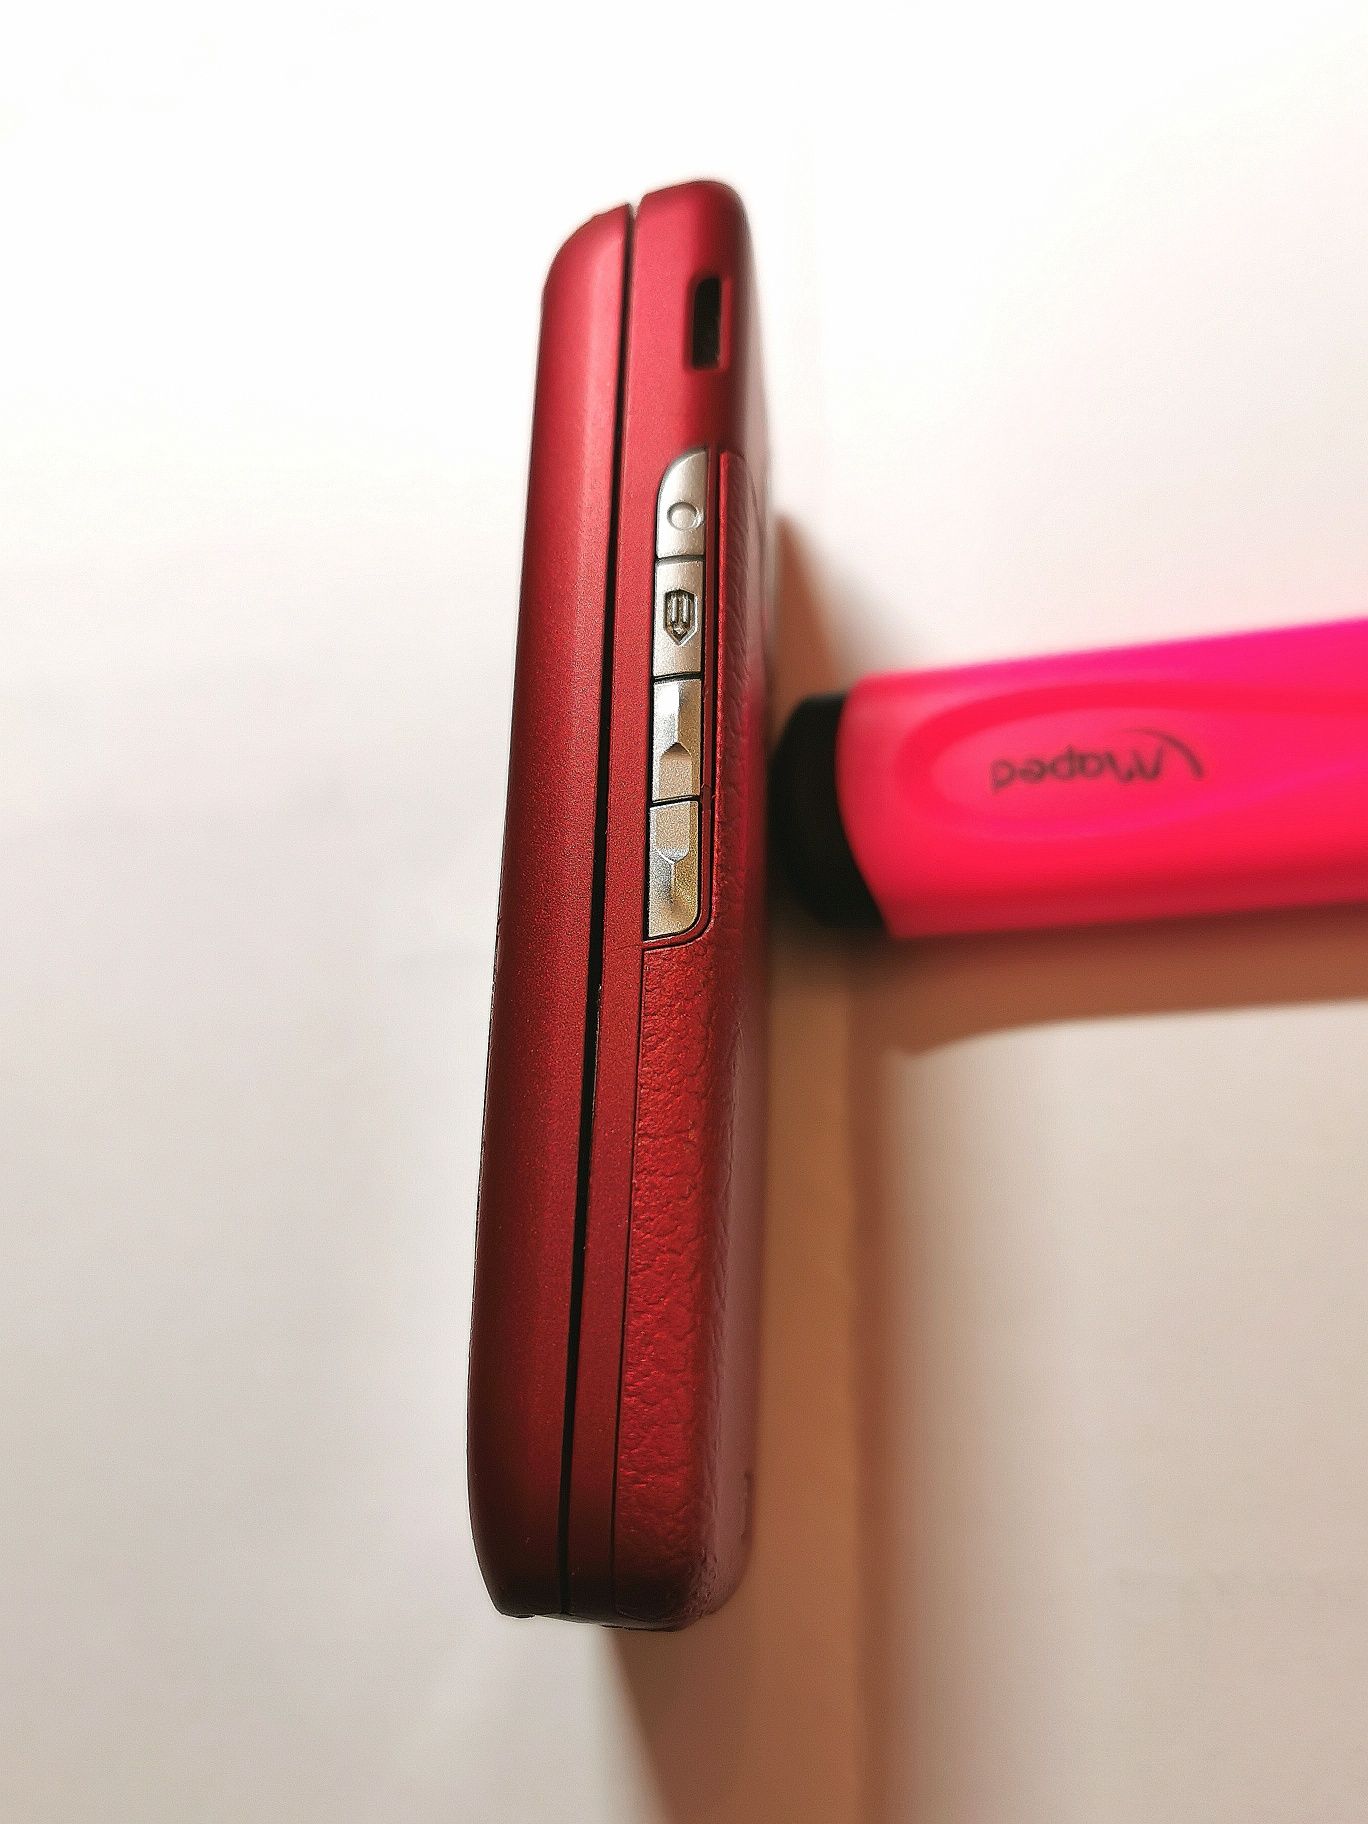 Nokia E 65 slide